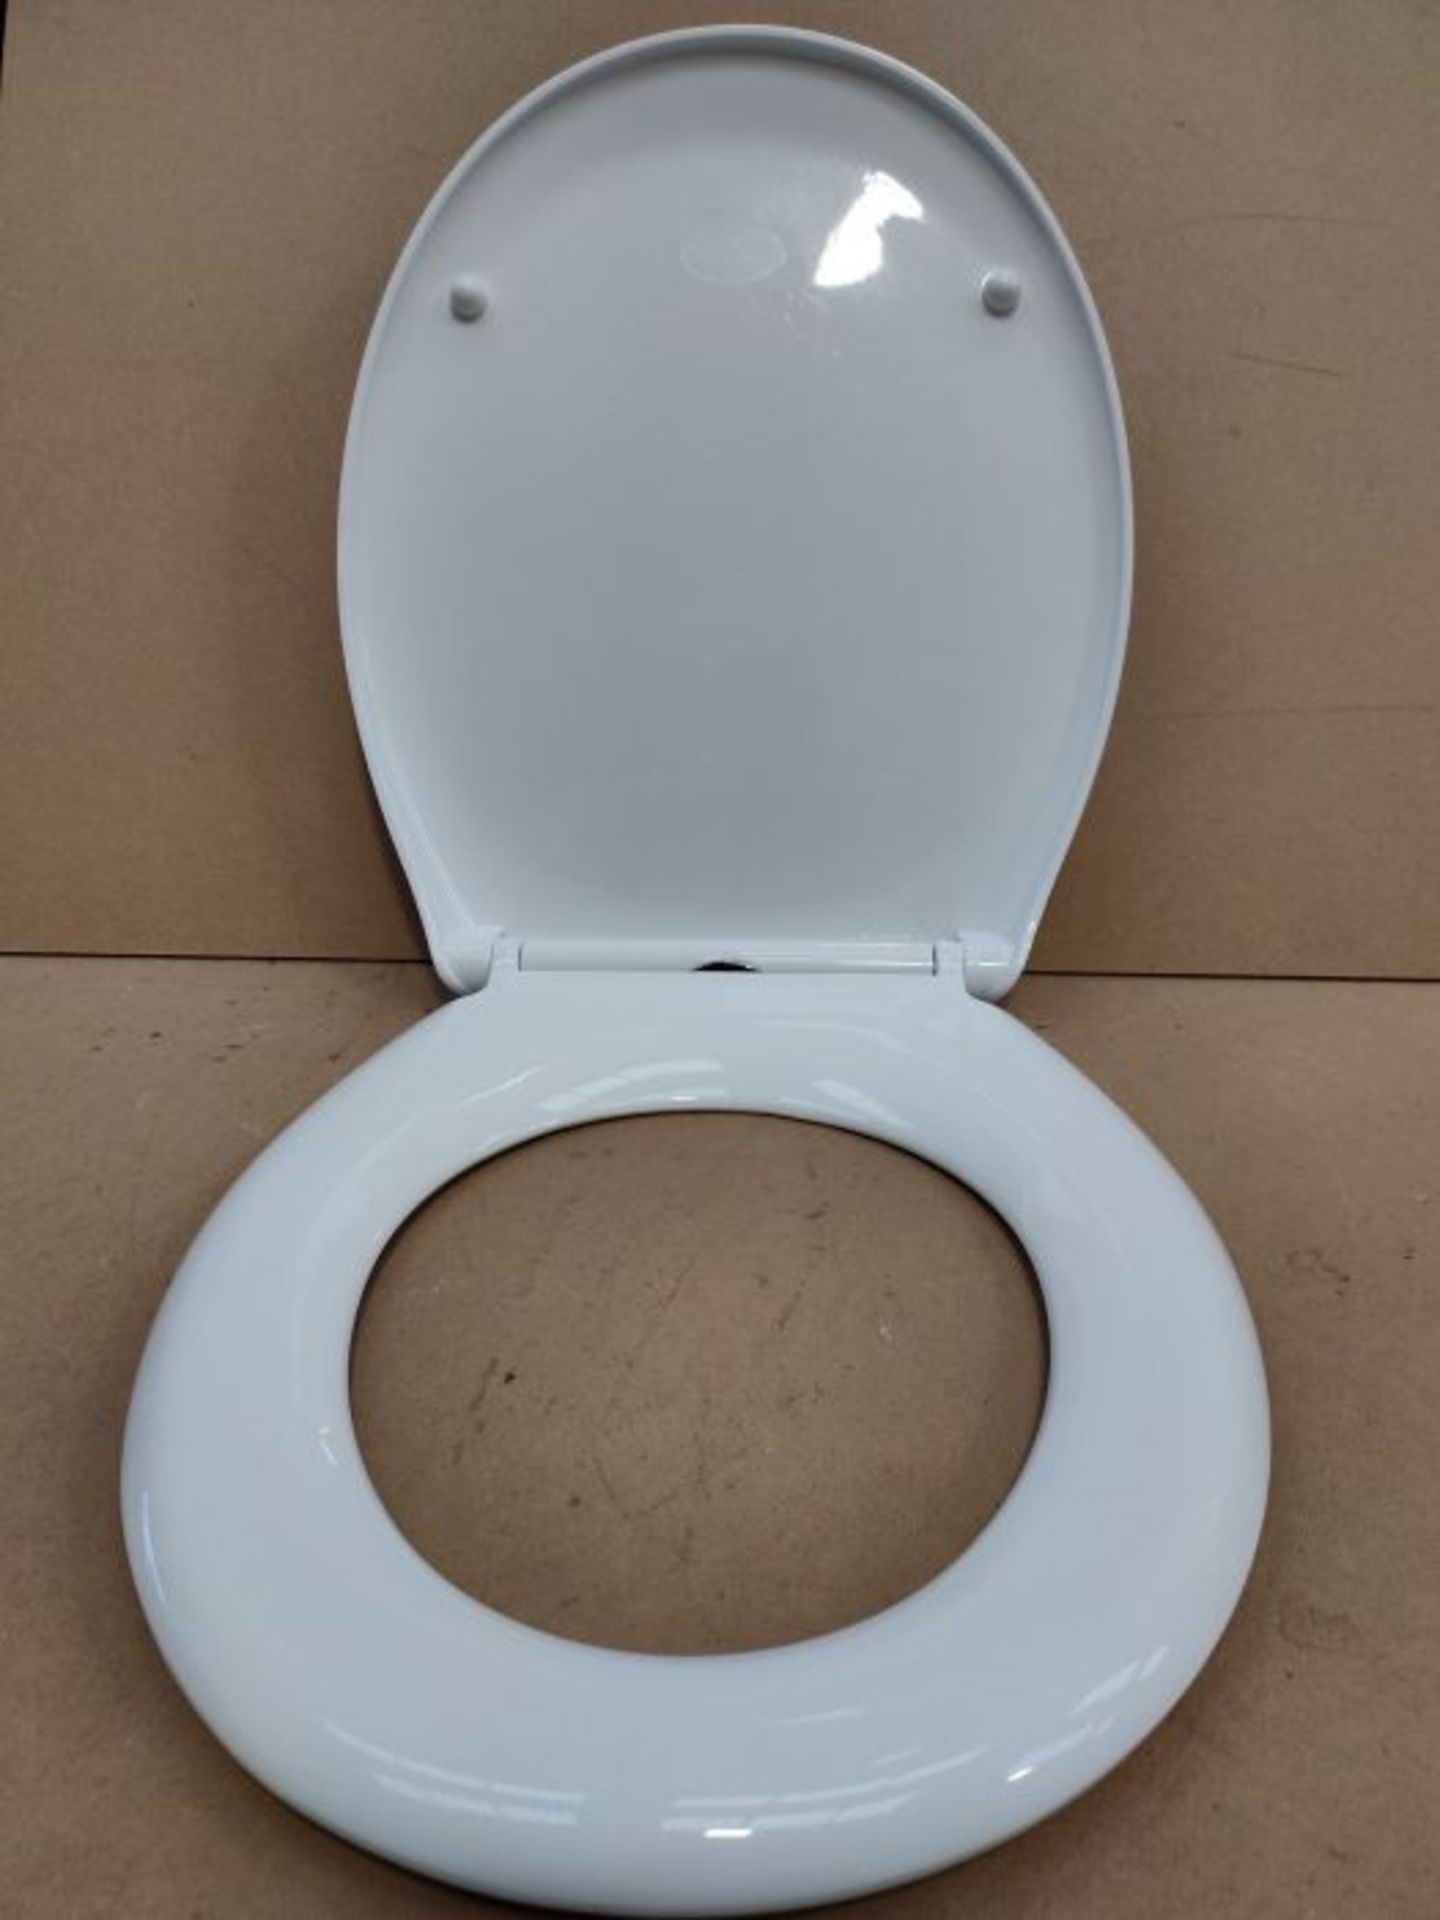 T�o�i�l�e�t� �S�e�a�t� �f�e�a�t�u�r�i�n�g� �S�o�f�t�-�C�l�o�s�e�,� �E�a�s�y� �C�l�e�a�n�,� �T�o�p� � - Image 2 of 2